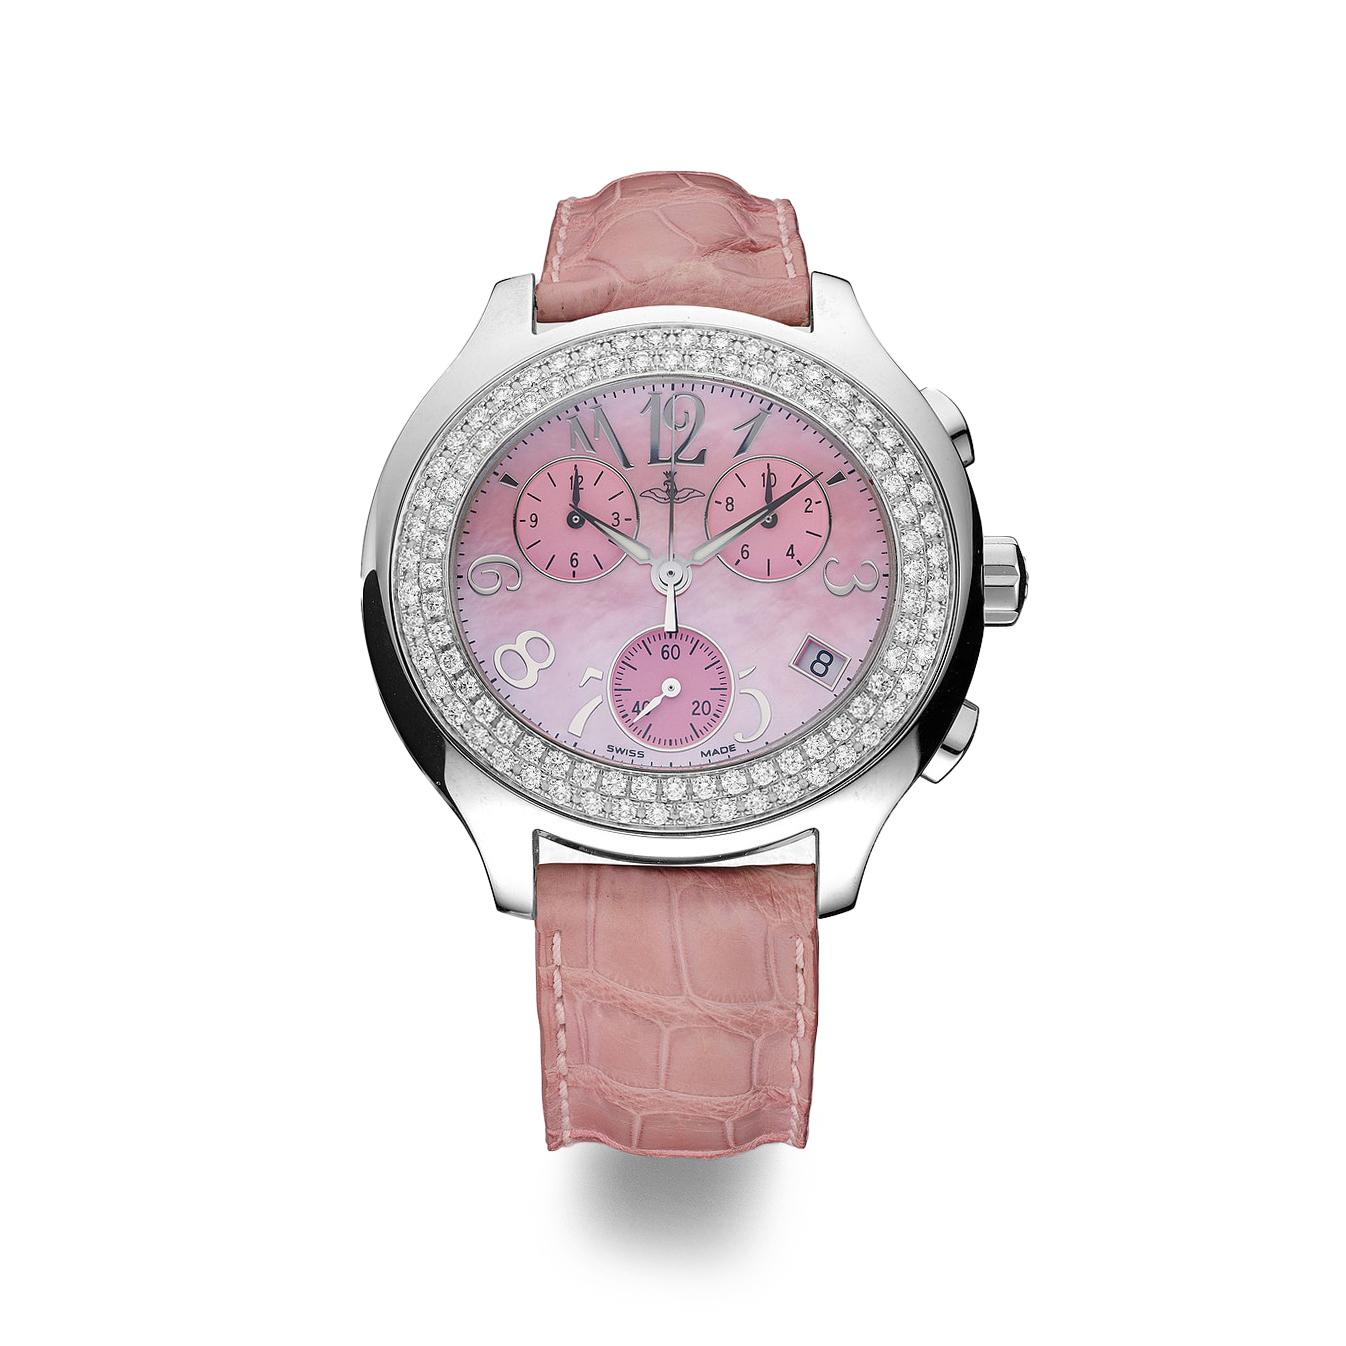 Montre chronographe en acier avec lunette sertie de 120 diamants de 1,70 cts, cadran en nacre rose, bracelet en alligator avec boucle à ardillon et mouvement à quartz.